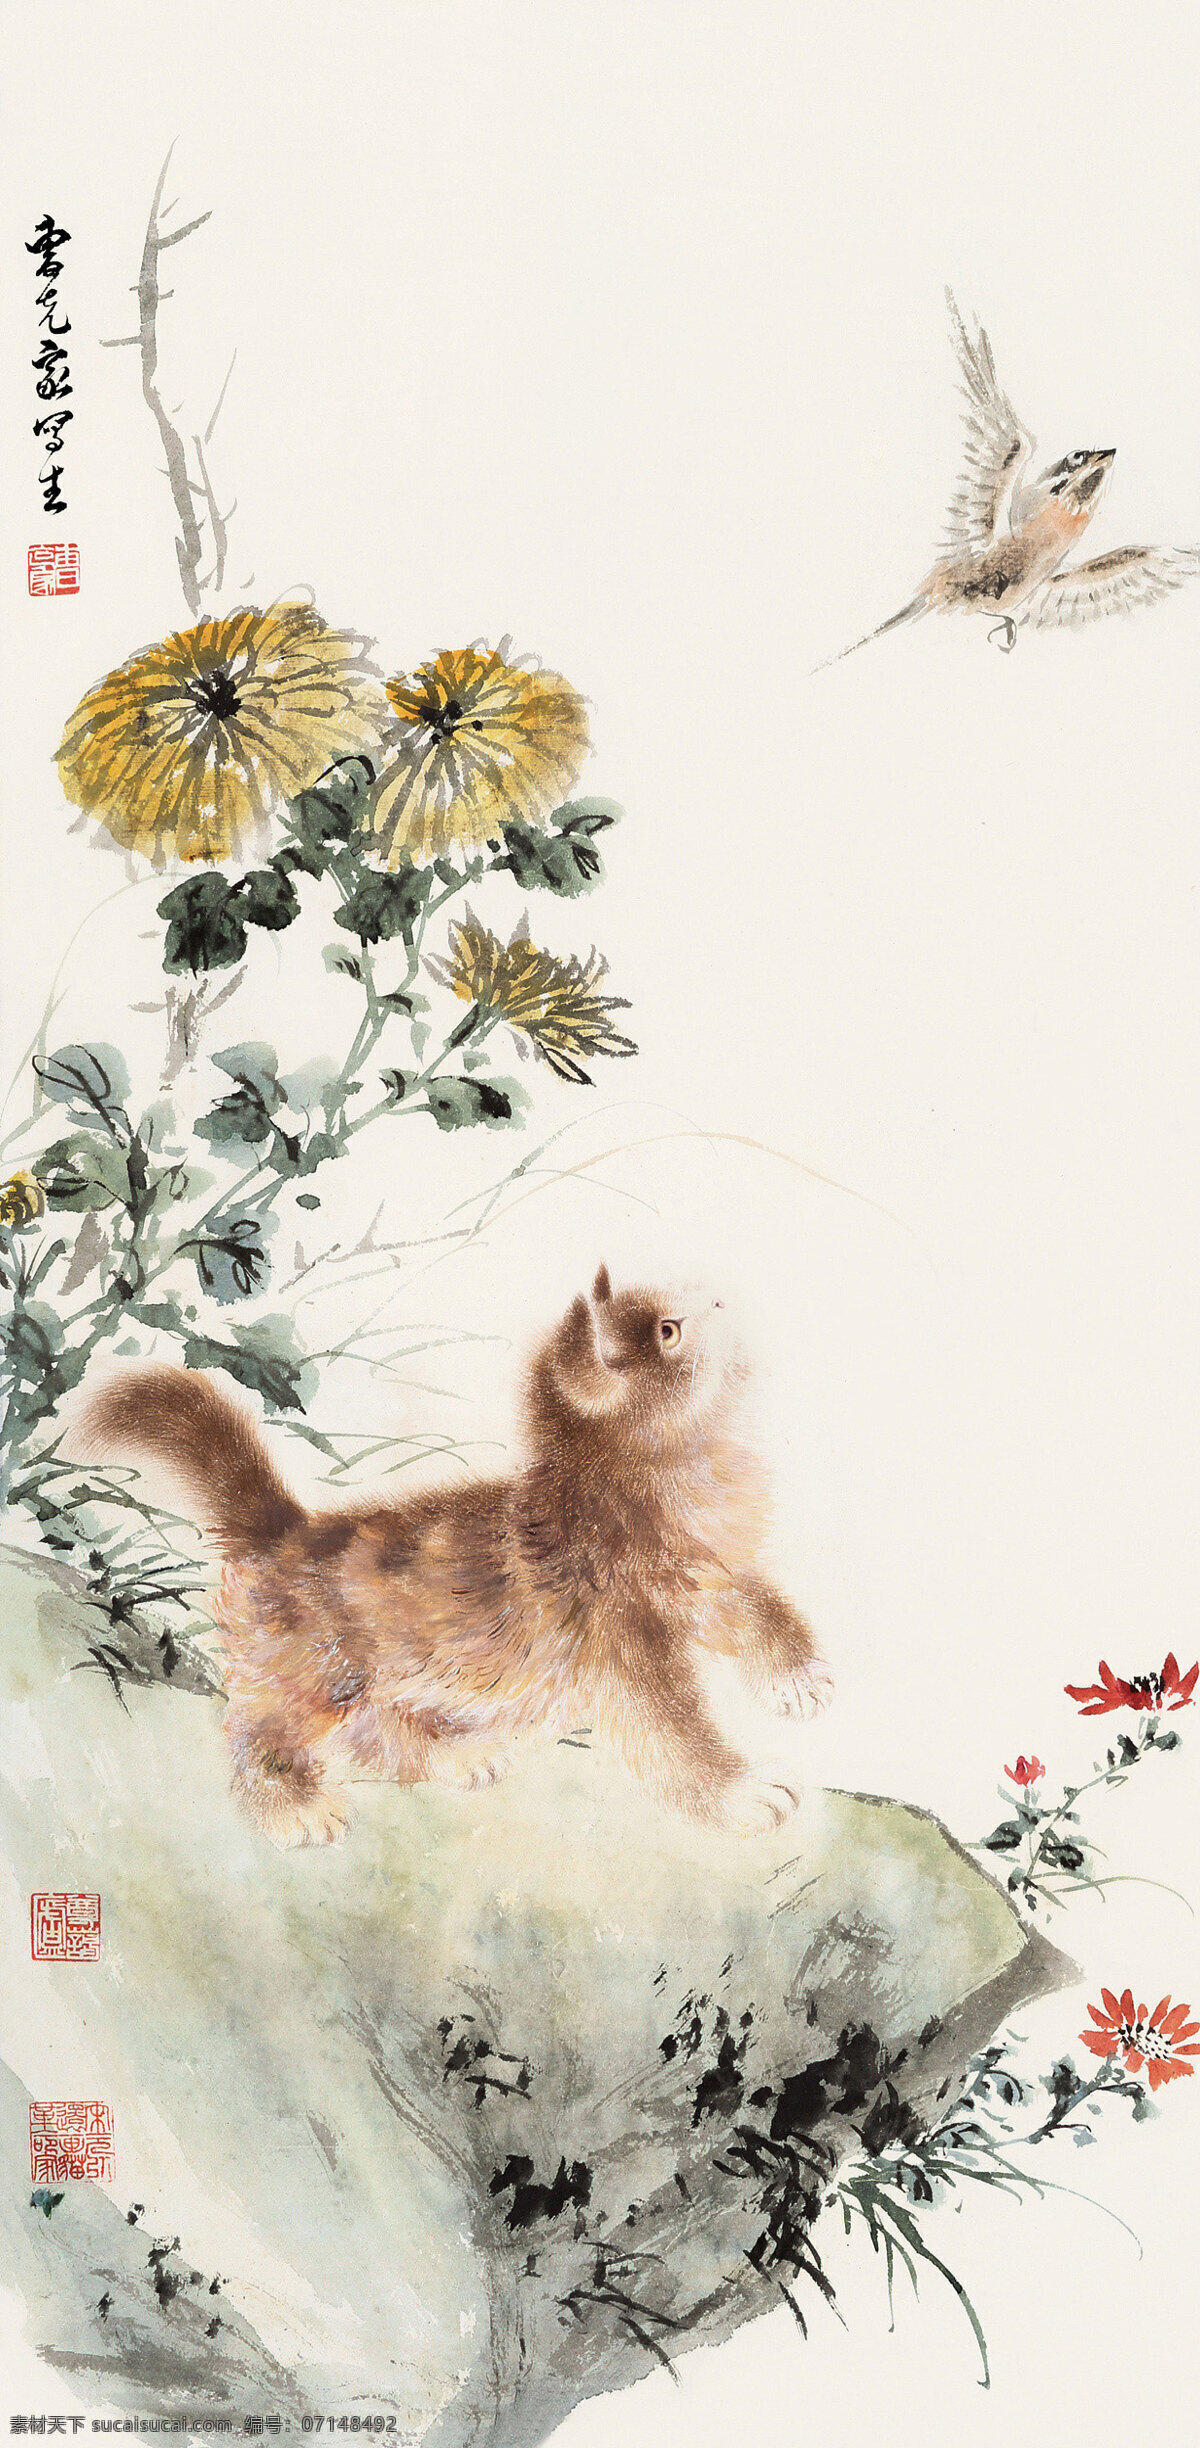 猫趣图 曹克家作品 菊花下 奇石上 一只小黄猫 惊飞麻雀 中国古代画 中国古画 绘画书法 文化艺术